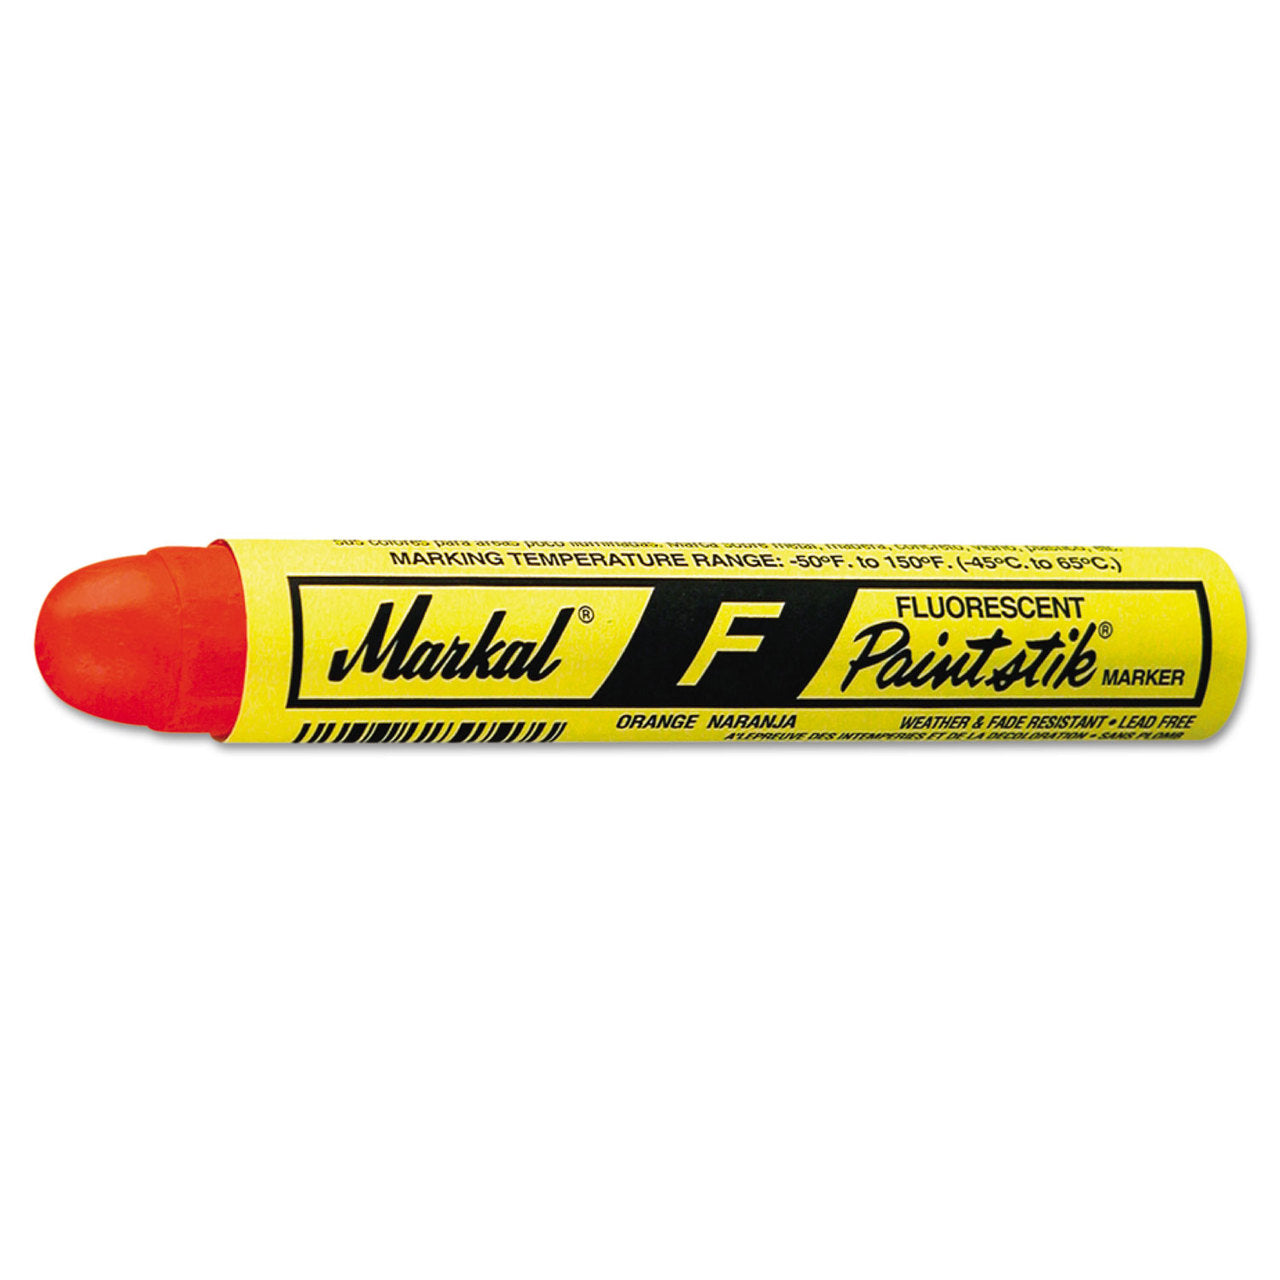 Markal Valve Action Paint Marker, -50F to 150F, Medium Bullet Dura